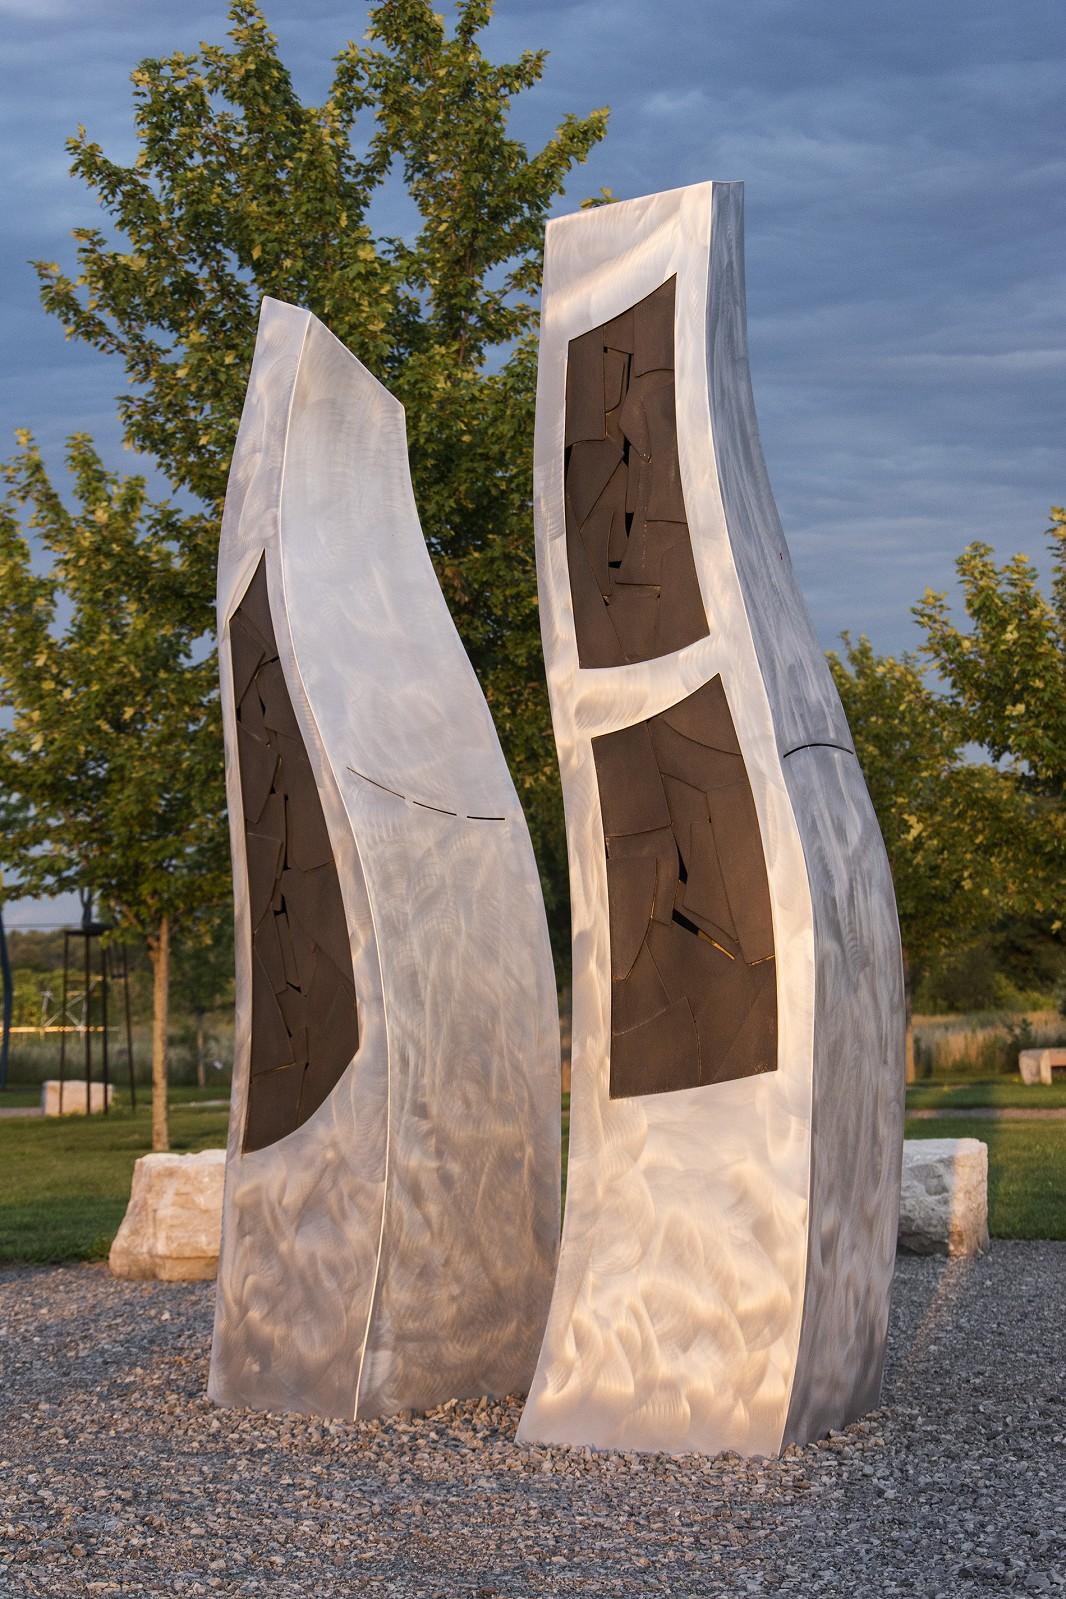 Deux formes organiques s'élèvent du sol et s'élèvent vers le ciel dans cette sculpture en aluminium finement travaillée de Stéphane Langlois.  Les formes abstraites évoquent l'idée de deux humains engagés dans une danse, peut-être deux oiseaux, se